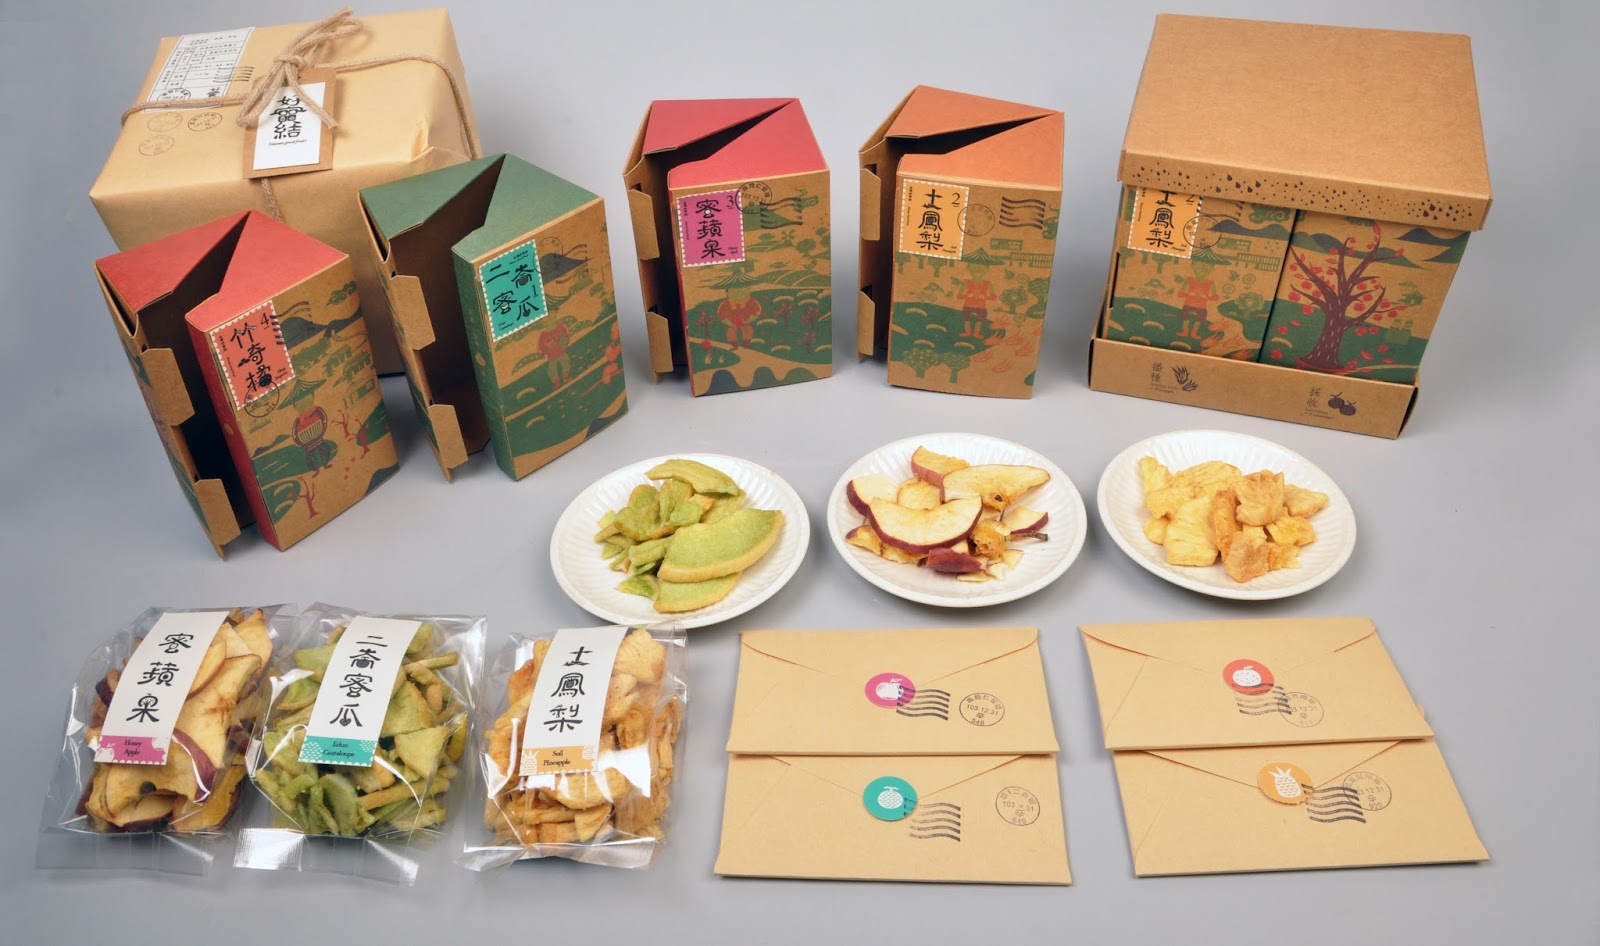 水果包装设计，果蔬包装箱设计，水果包装设计公司，果品包装设计公司，上海包装设计公司